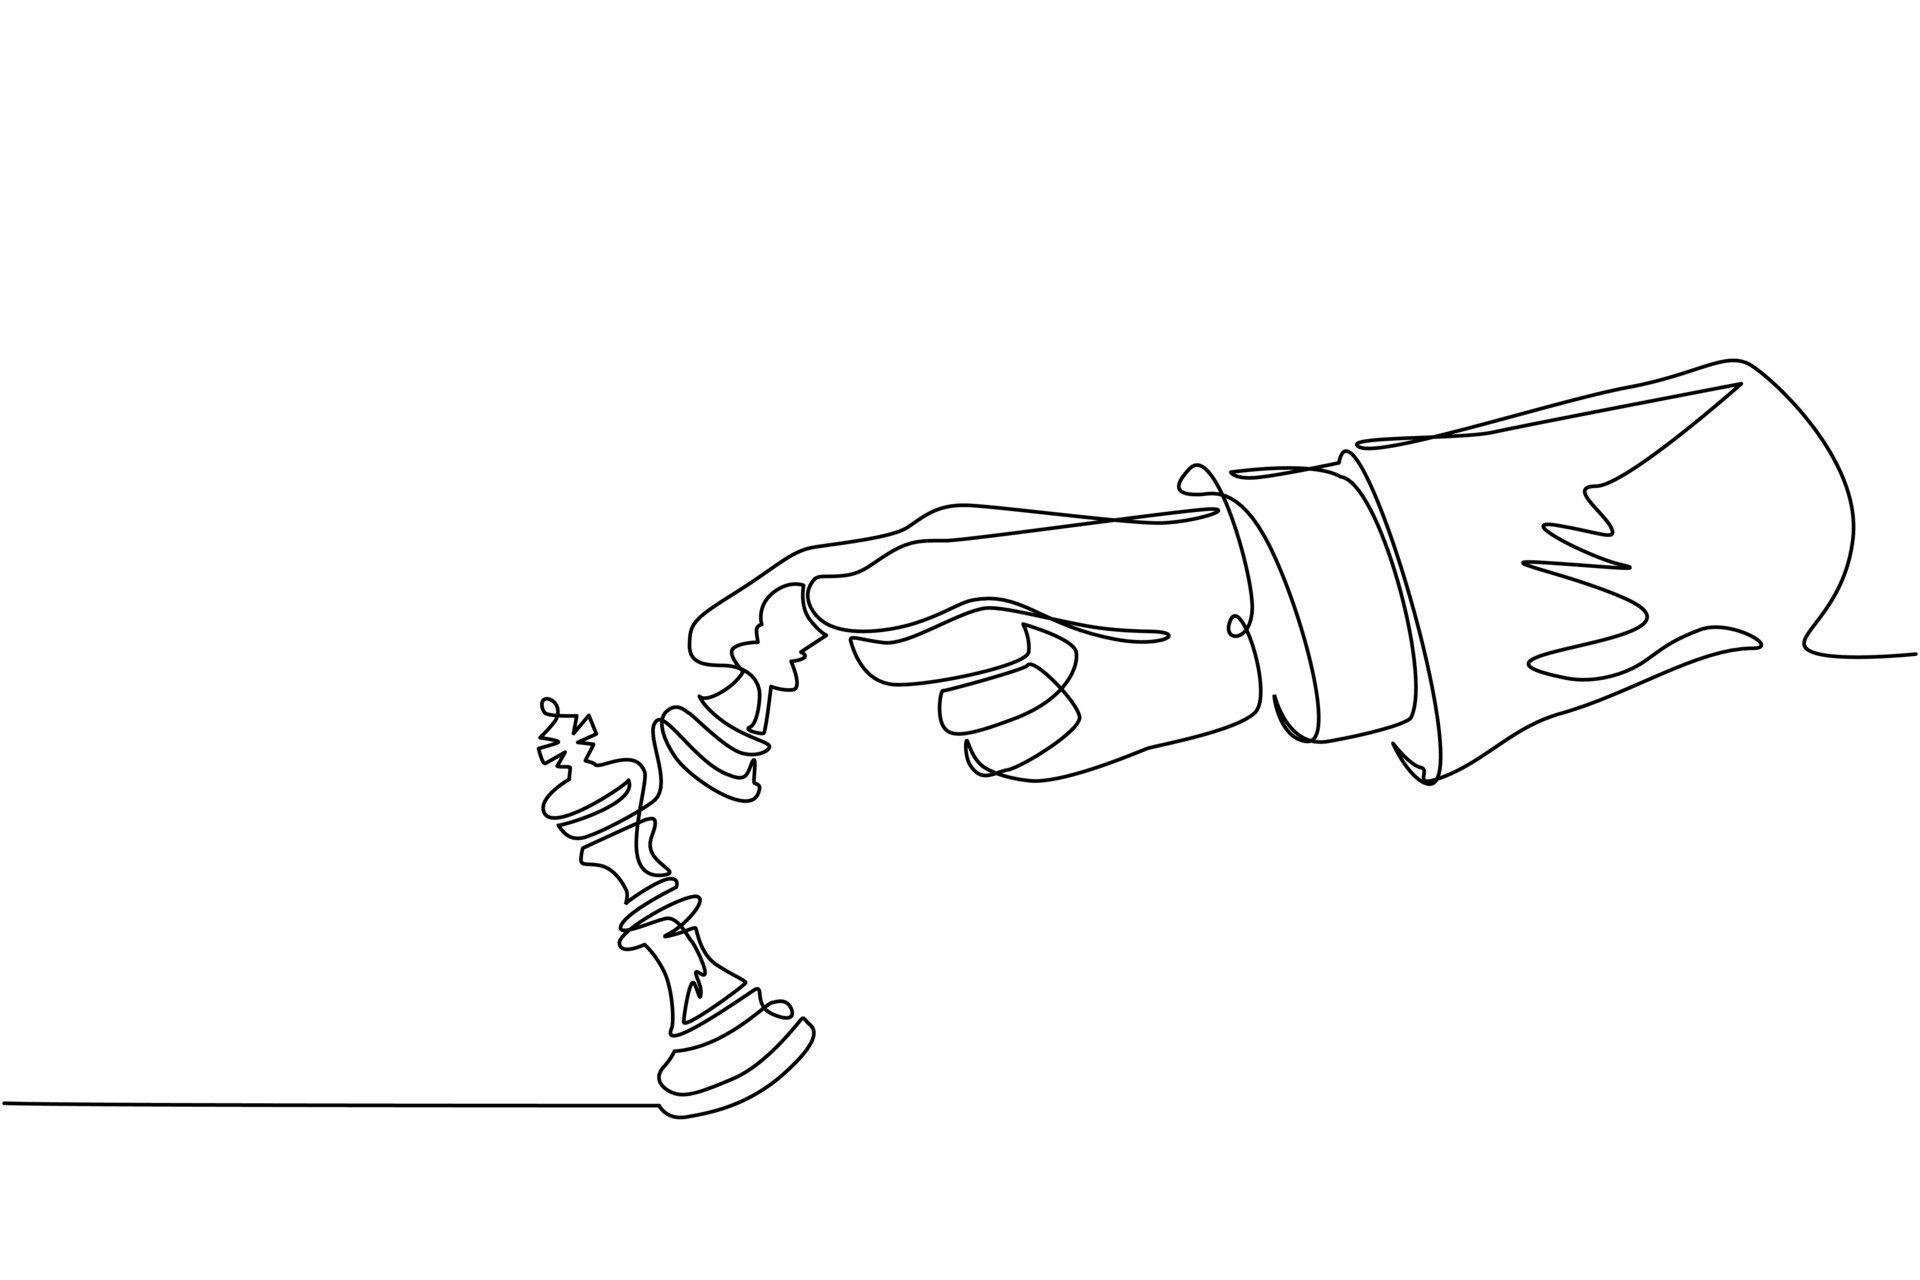 Ilustração de peão preto colocando xeque-mate no rei branco